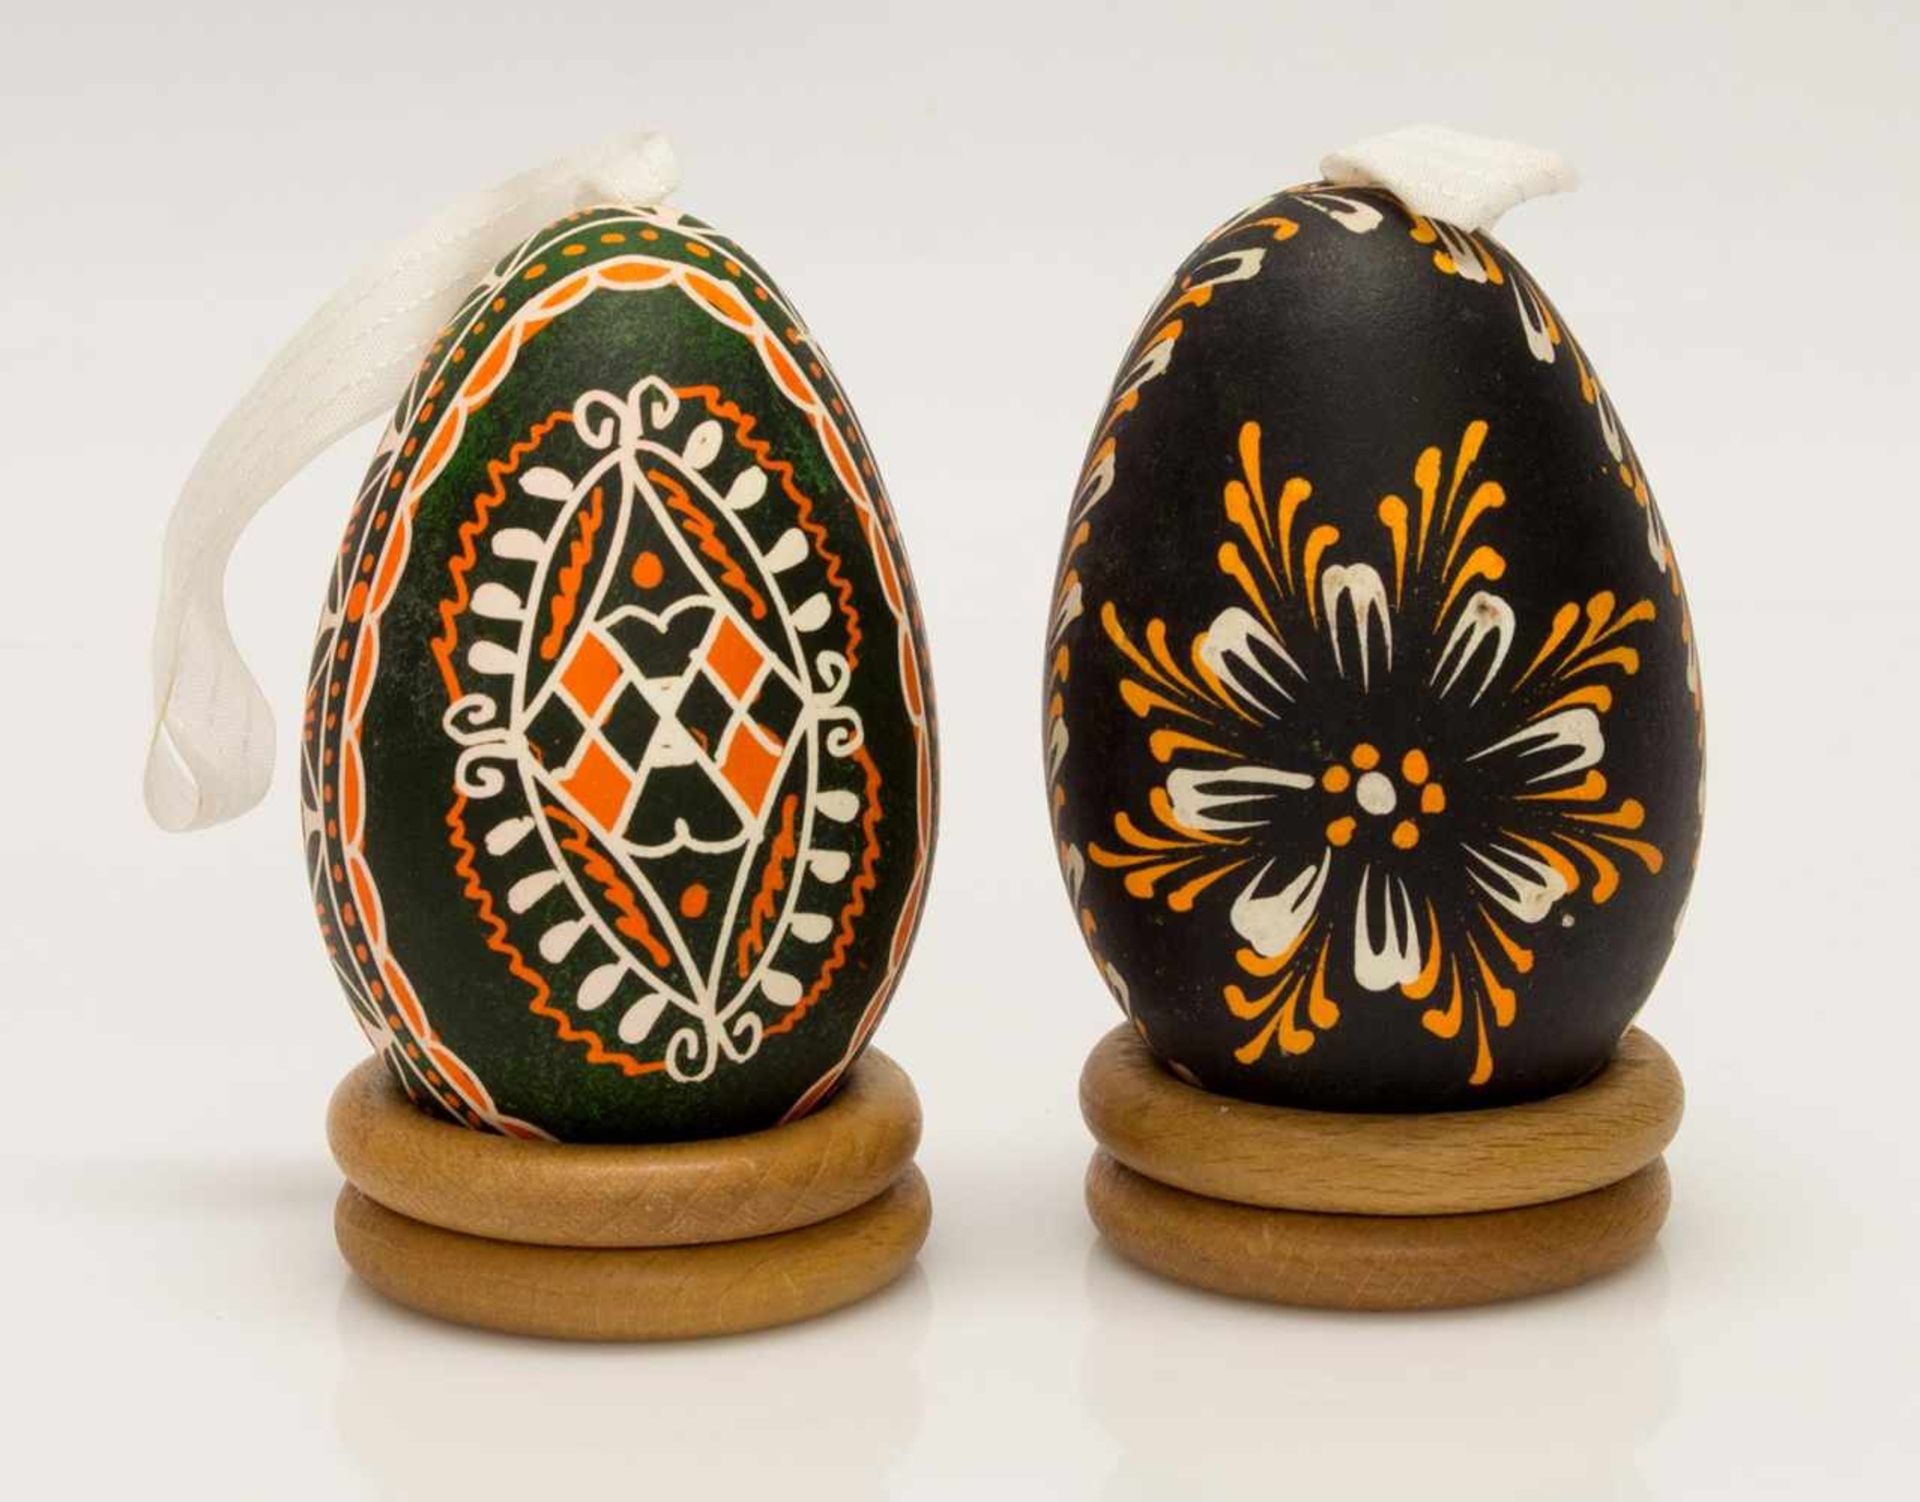 Lot Ostereier2 handbemalte traditionell ukrainische (Pysanka) u. sorbische Eier,